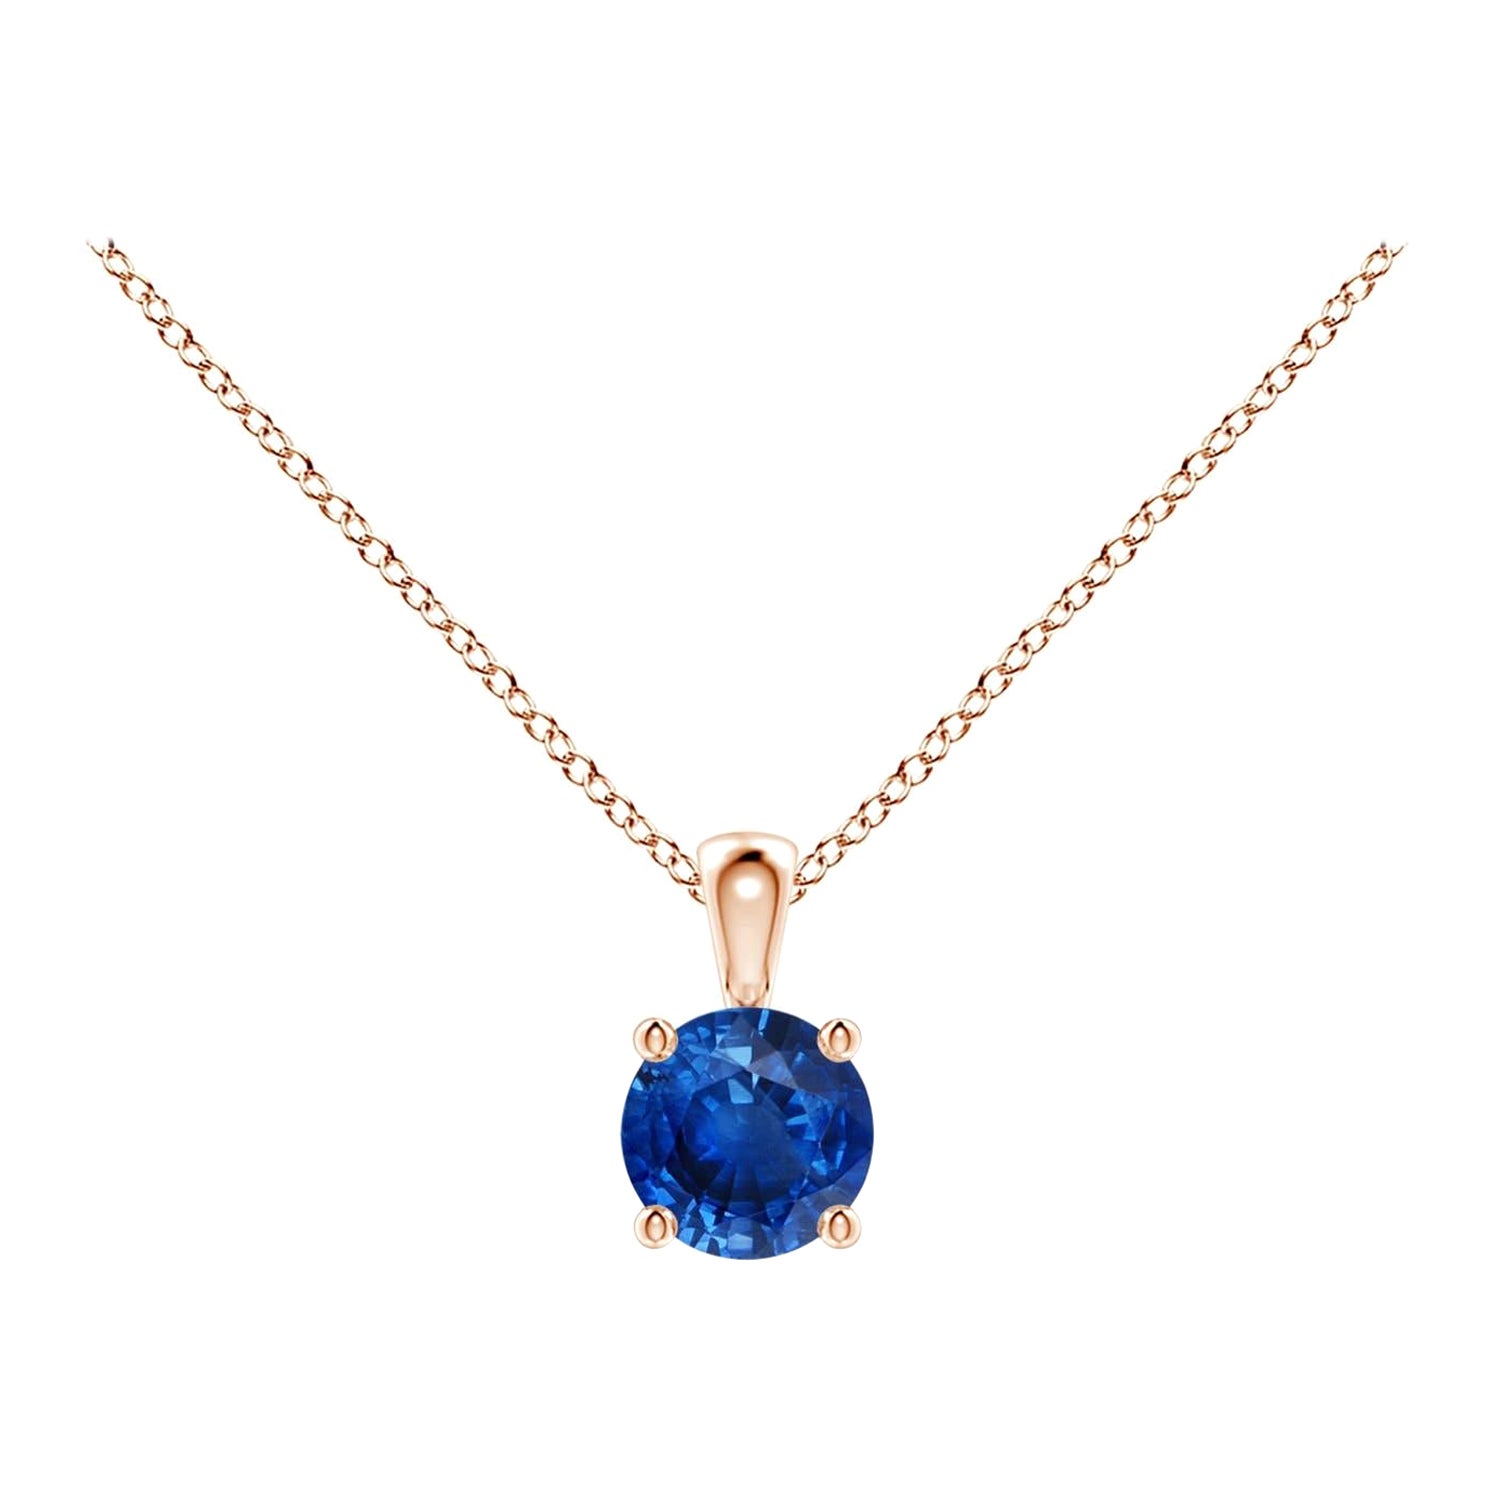 ANGARA Pendentif solitaire en or rose 14 carats avec saphir bleu rond naturel de 0,33 carat